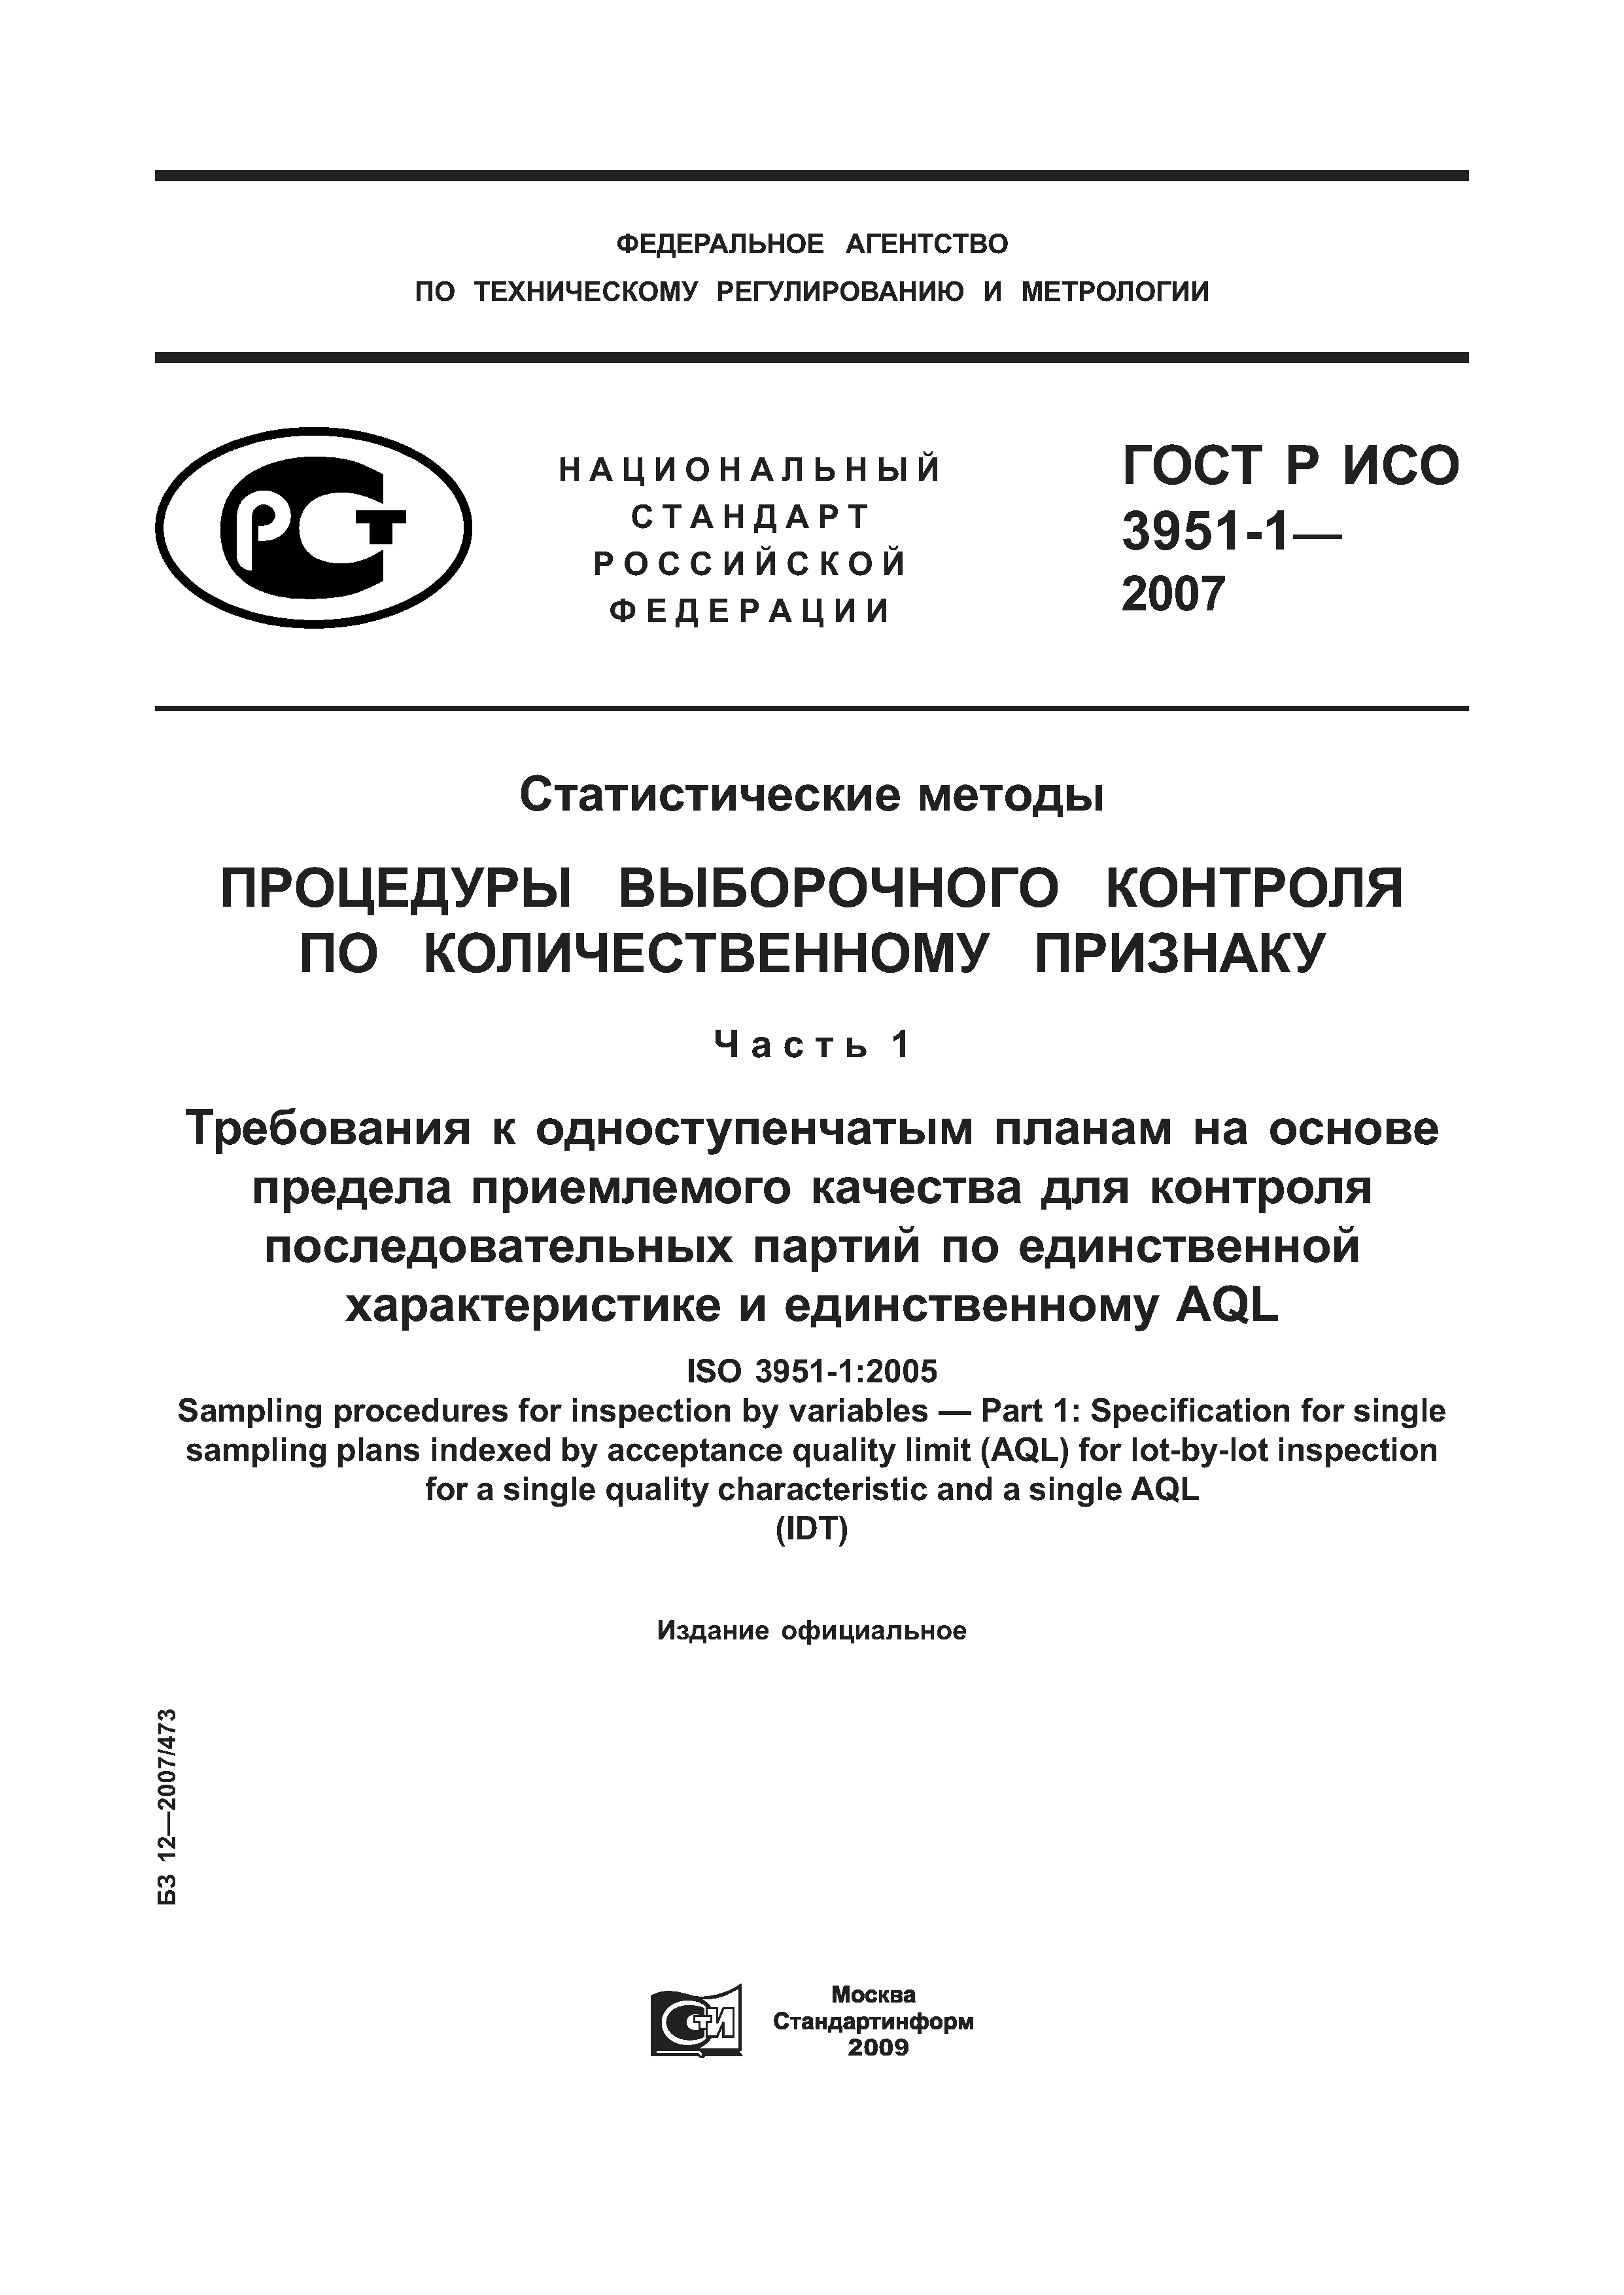 ГОСТ Р ИСО 3951-1-2007